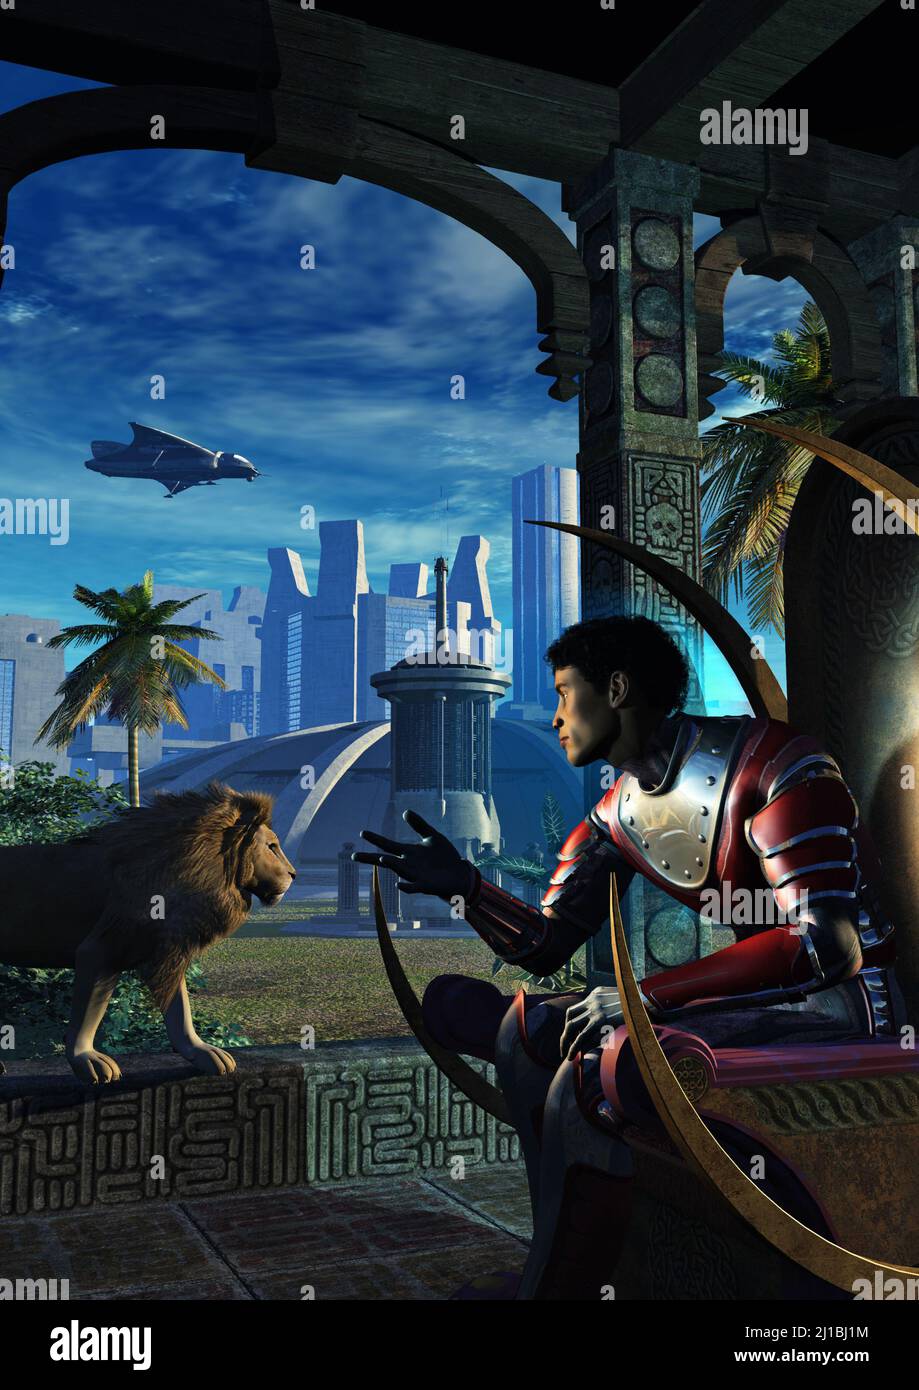 guerriero in uniforme metallizzata con un leone in una città futuristica, illustrazione del 3d Foto Stock